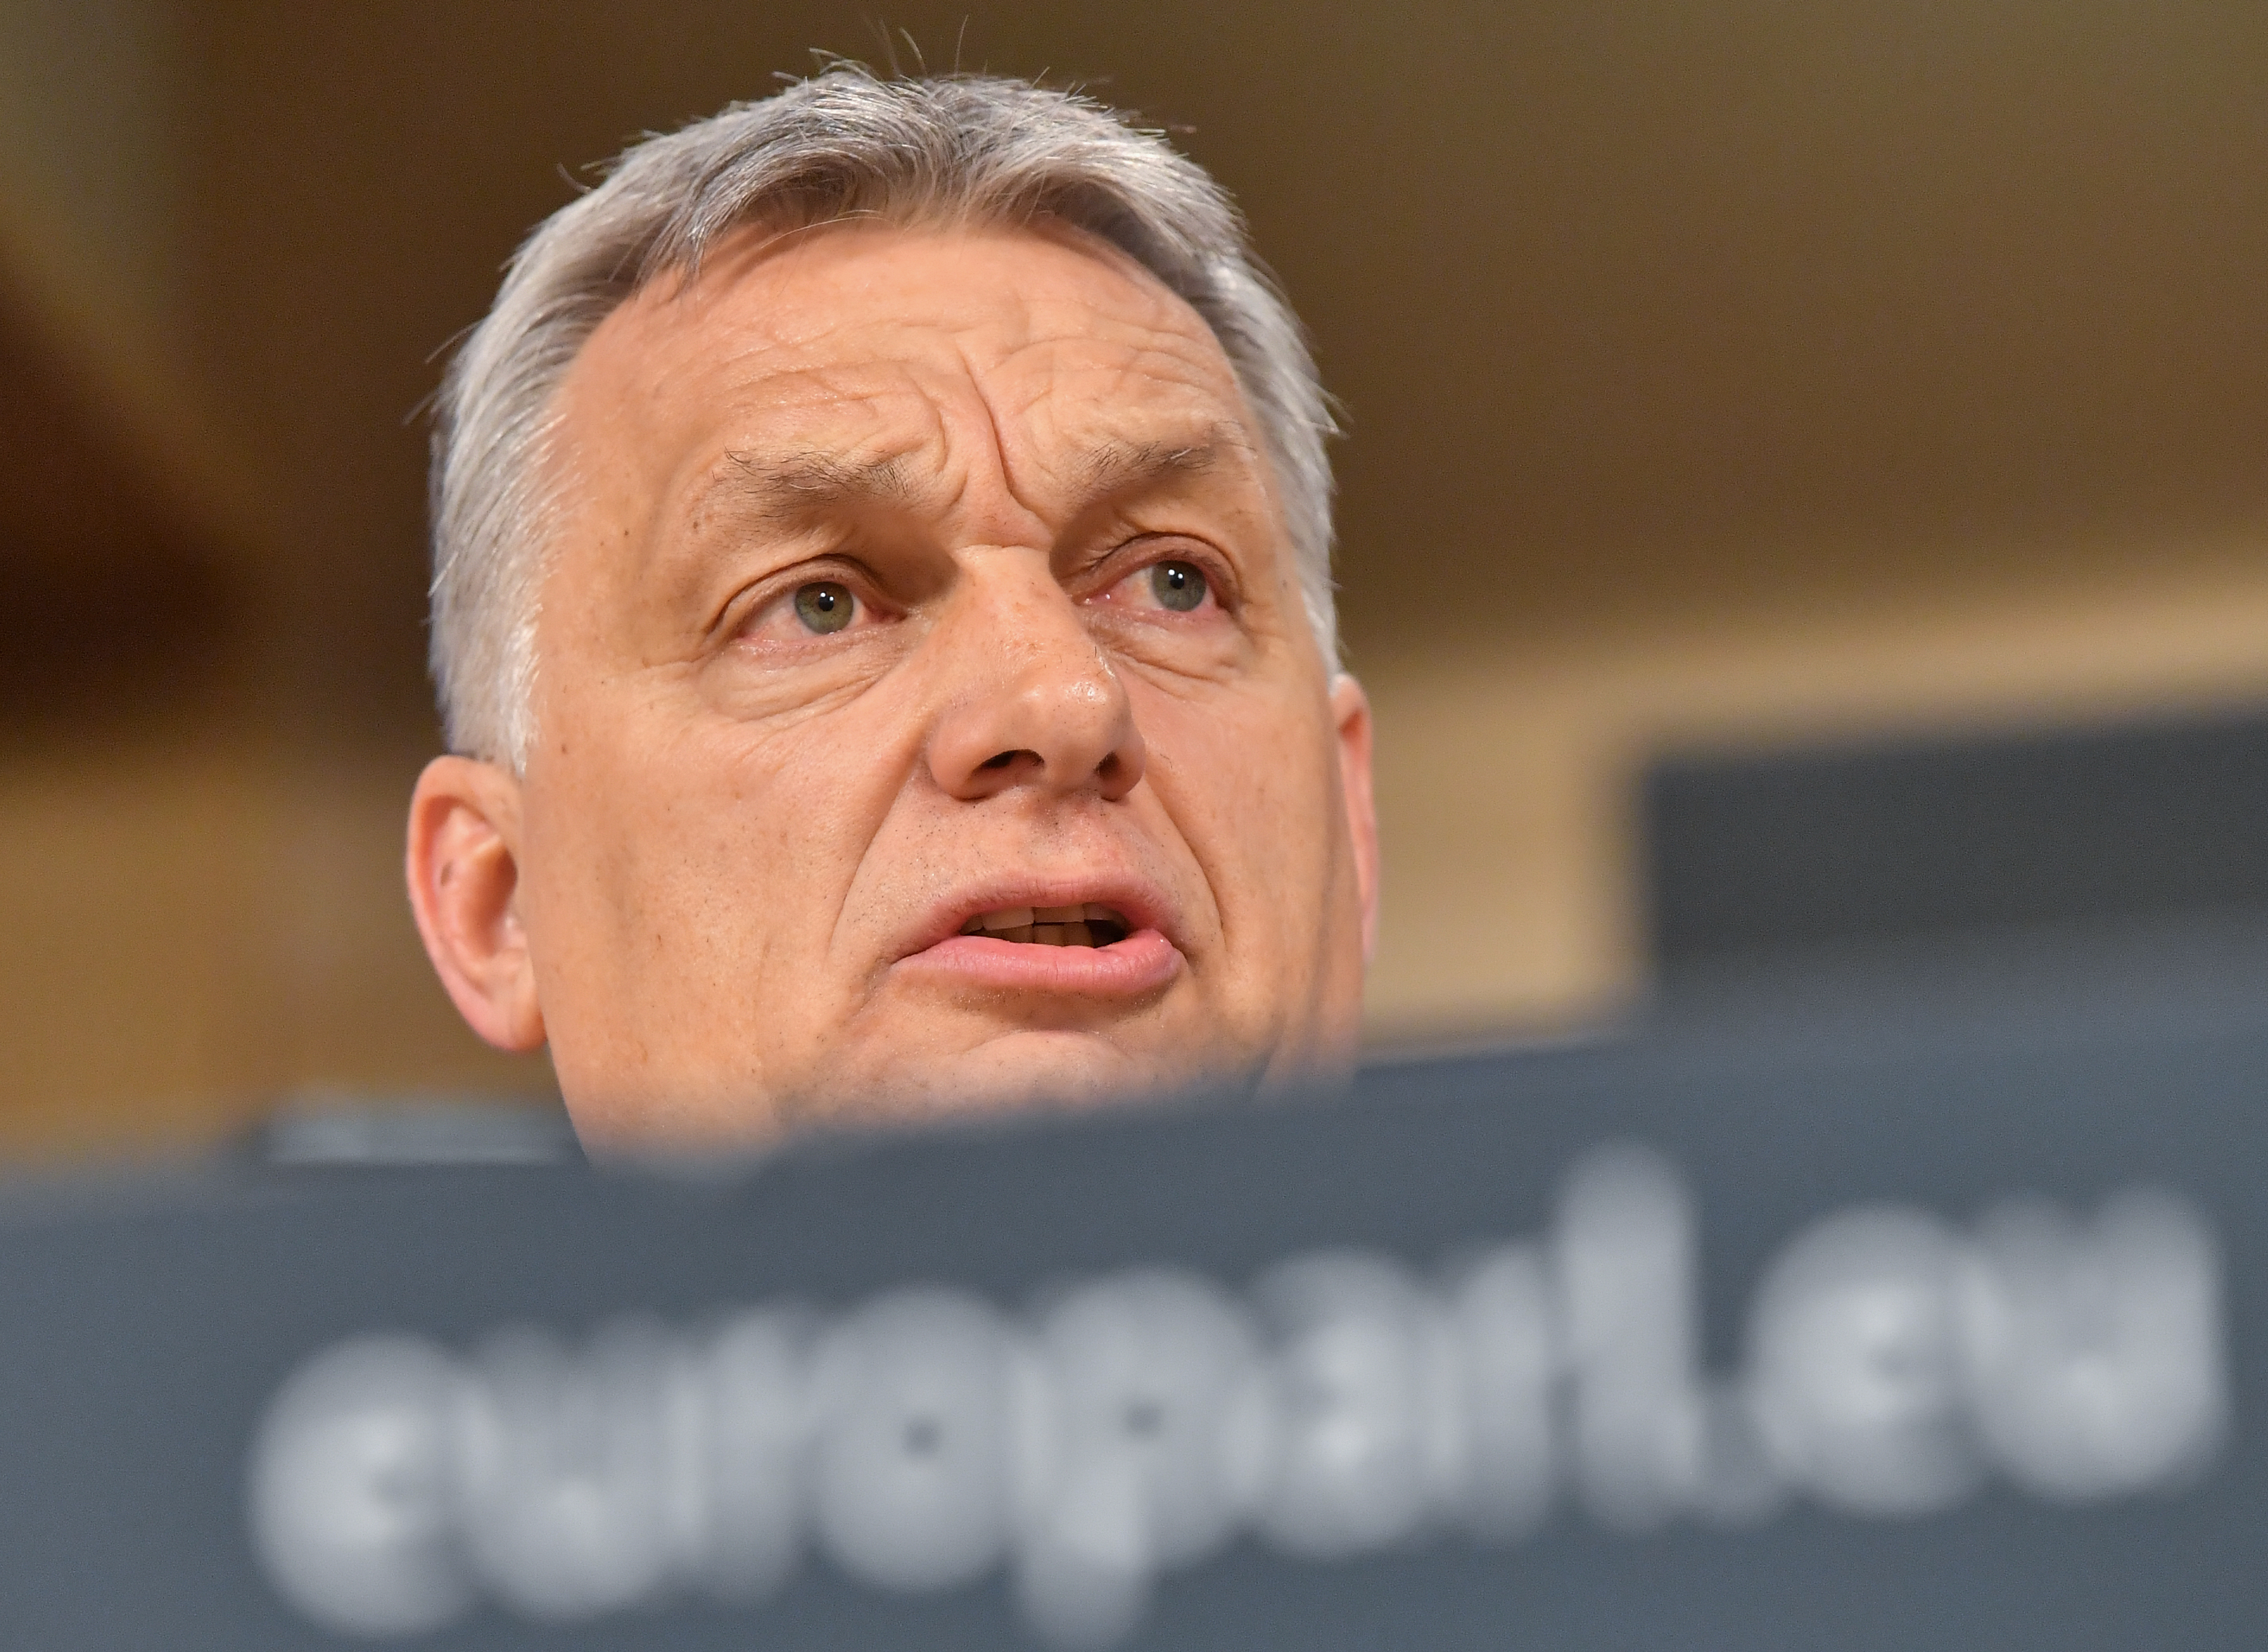 Orbán szerint ők maguk kérték a felfüggesztést, mert az megengedhetetlen lett volna, ha felfüggesztik őket